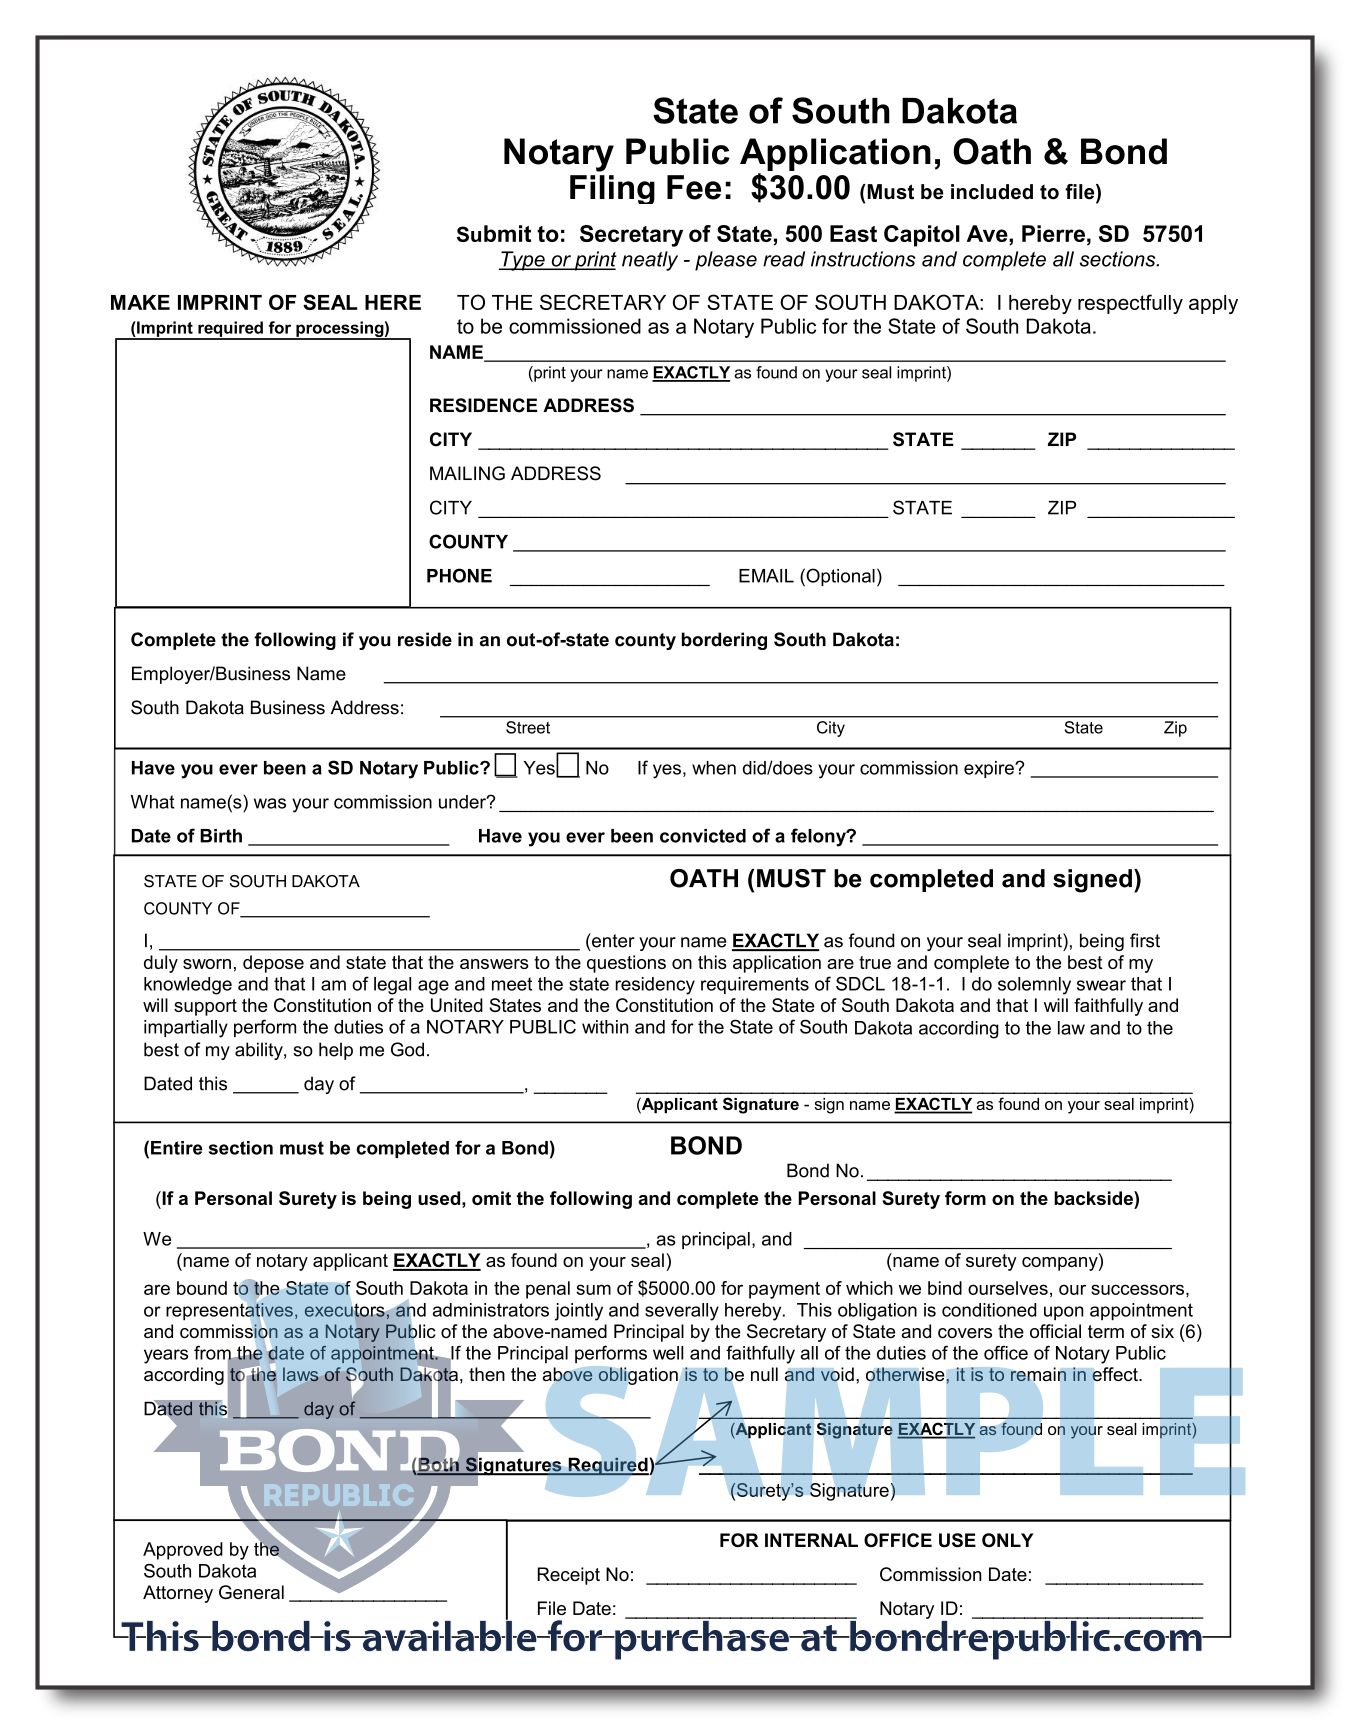 south-dakota-notary-bond